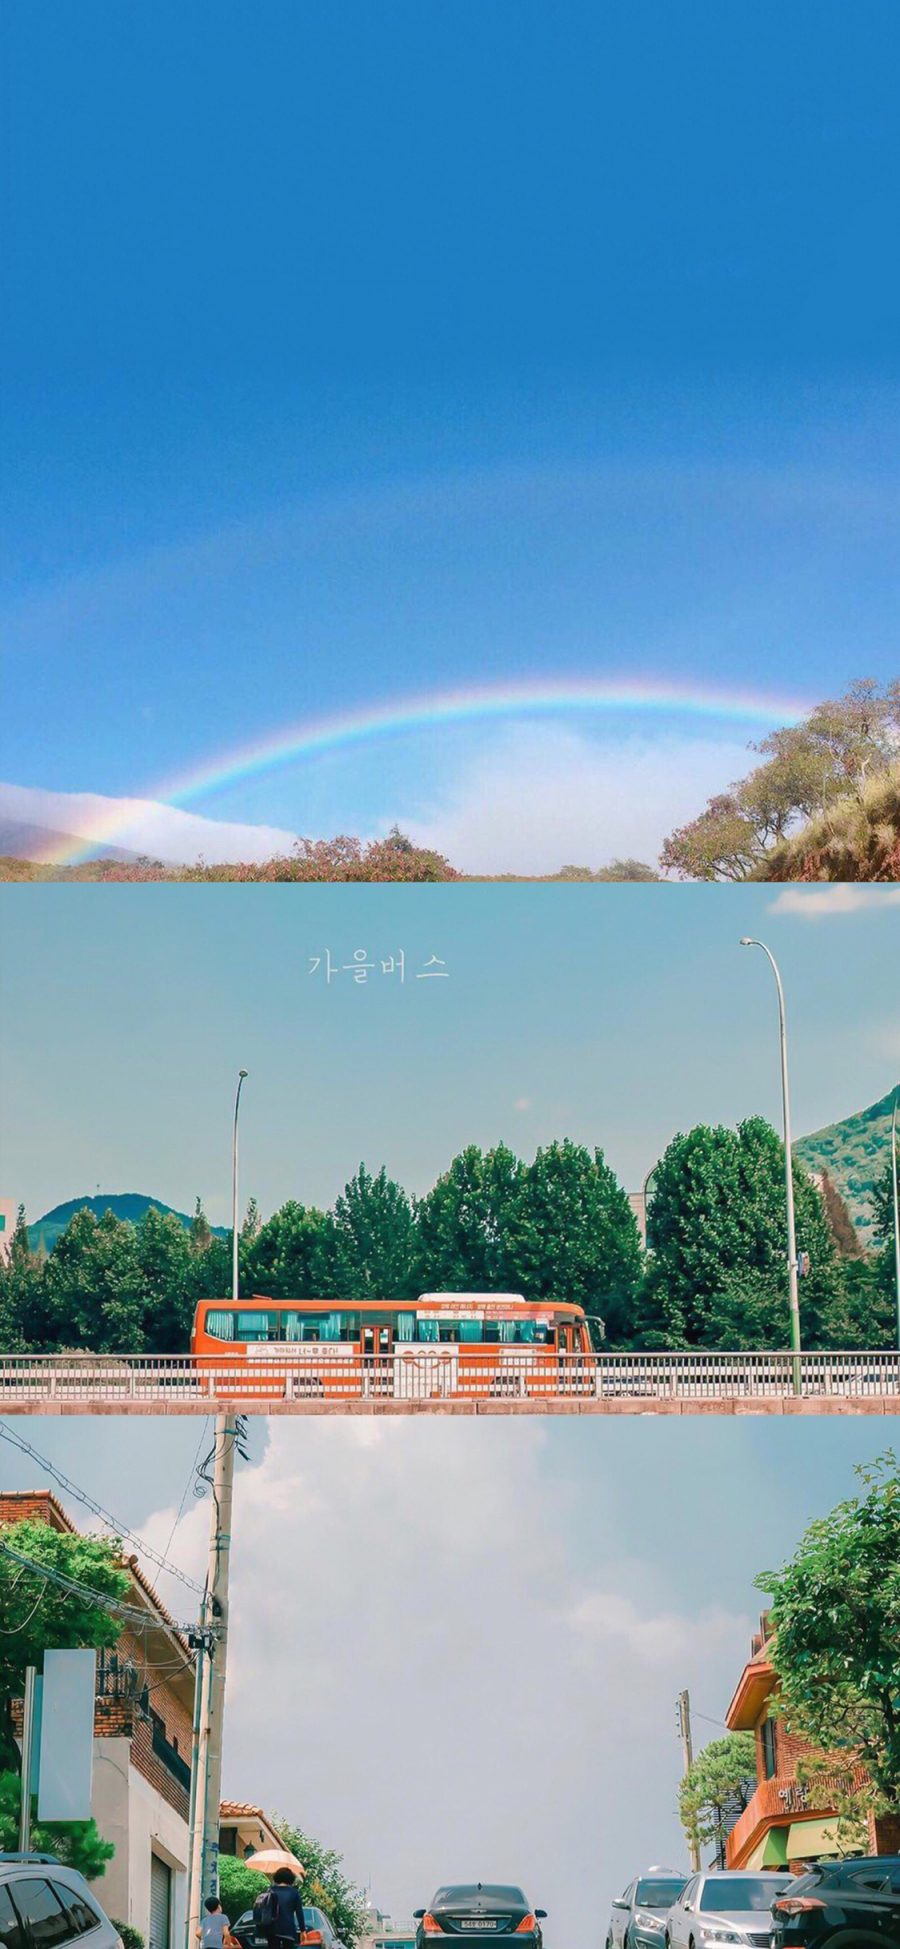 [2436×1125]拼接 彩虹  巴士 街景 苹果手机壁纸图片